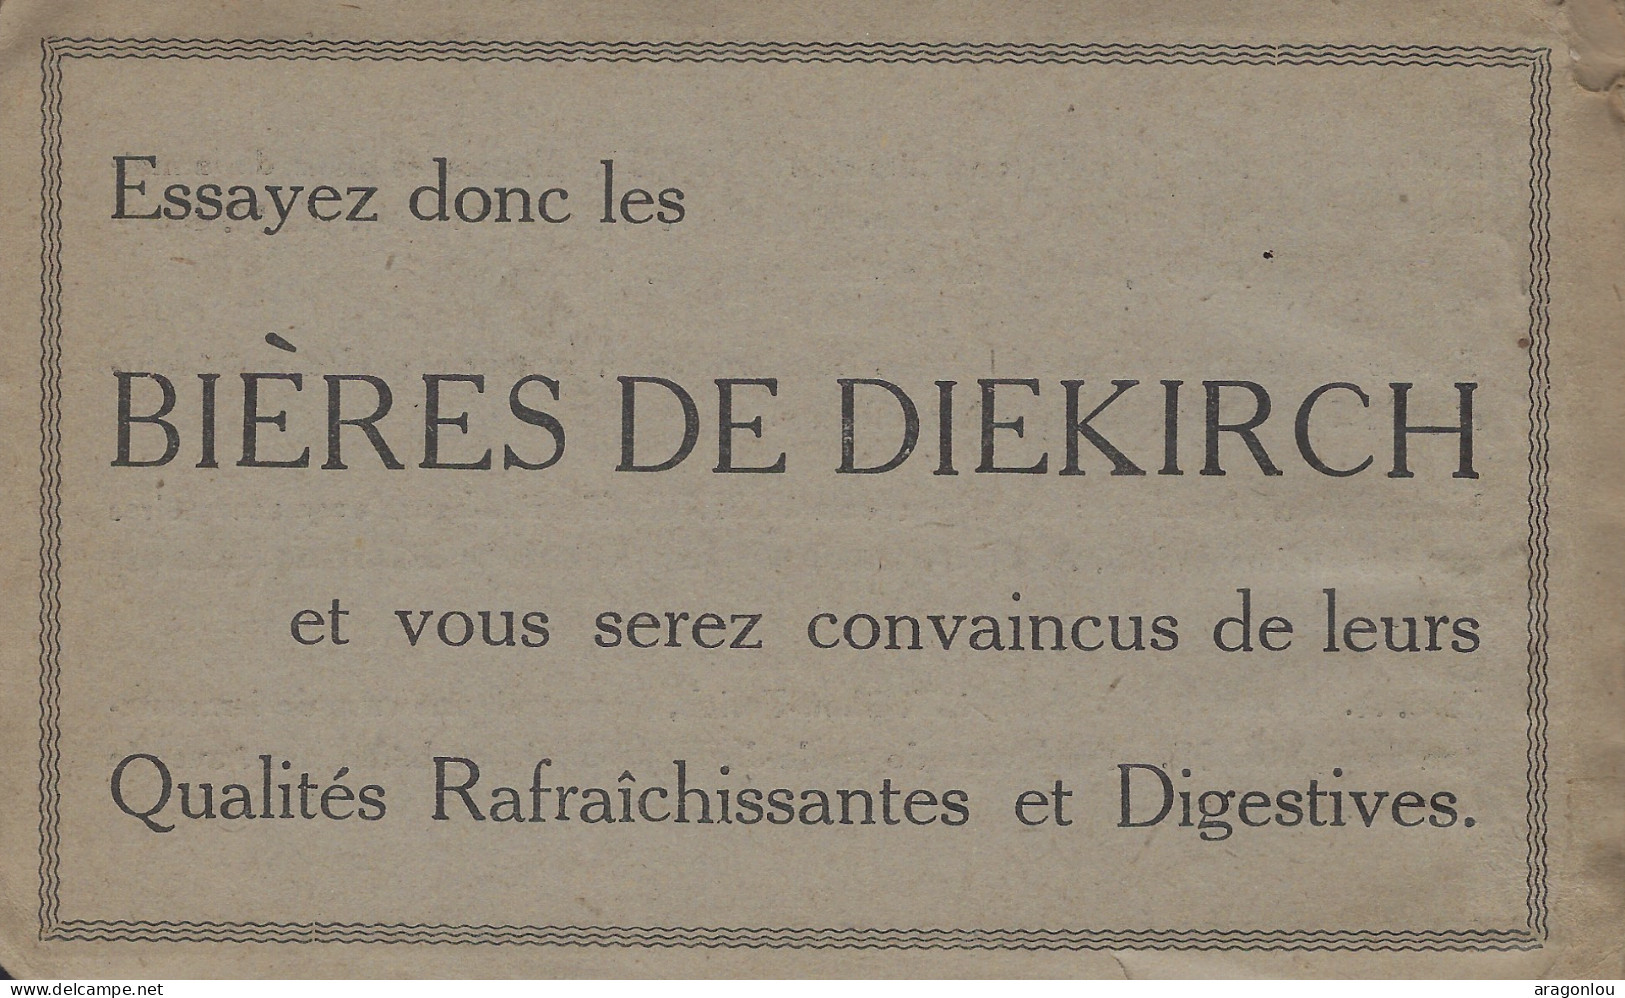 Luxembourg - Luxemburg - S.A. de la BRASSERIE de DIEKIECH - Cartes Postales